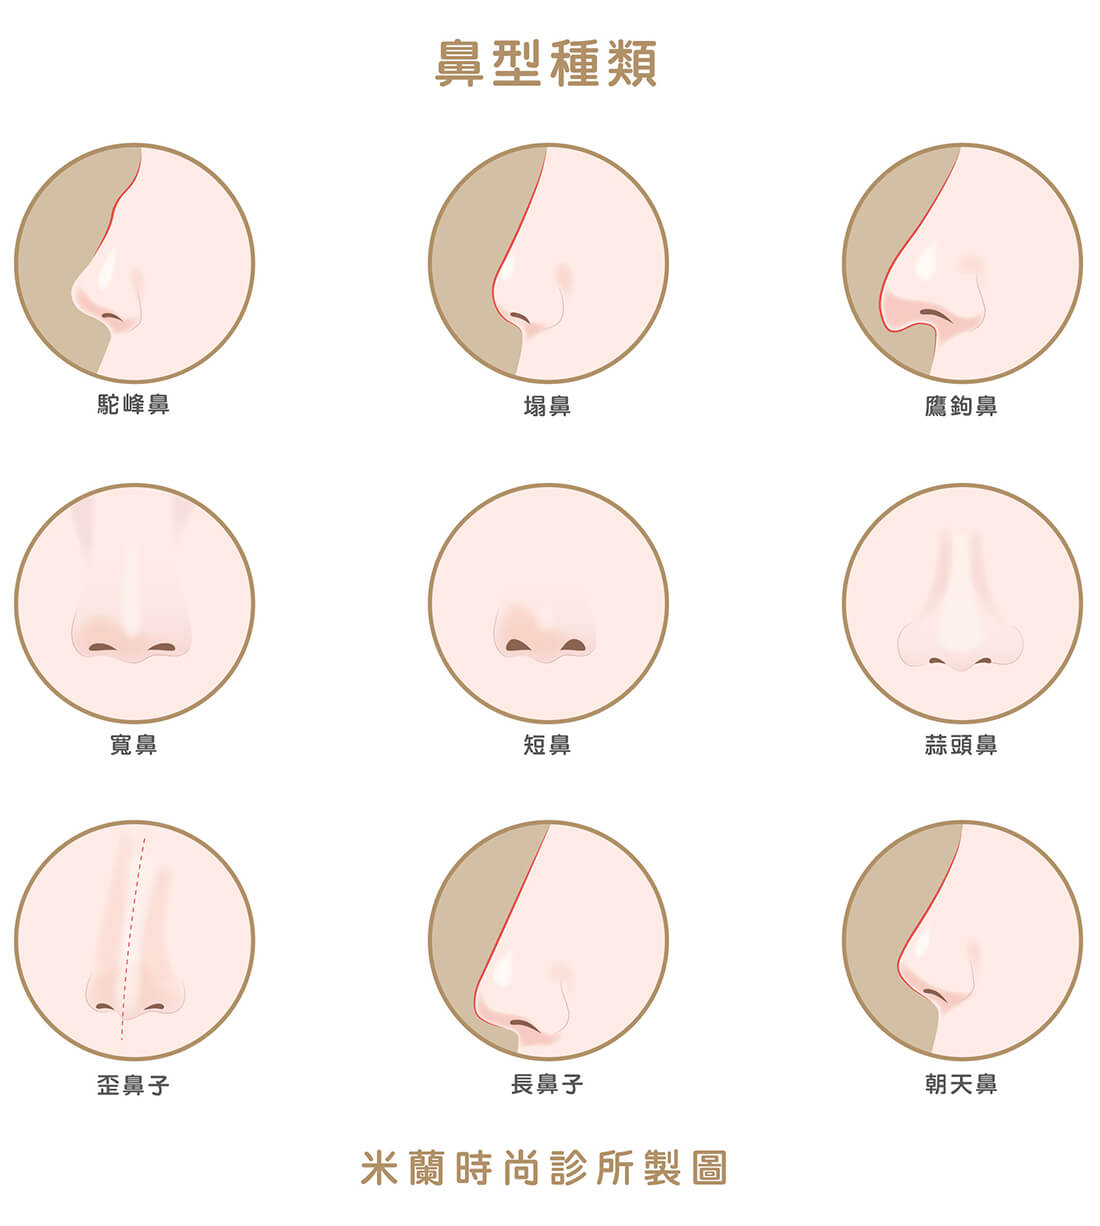 亚洲人的鼻梁竟然不是最低的！世界三大人种鼻子的鼻型差异你知道_顾清_主治医师_爱问健康